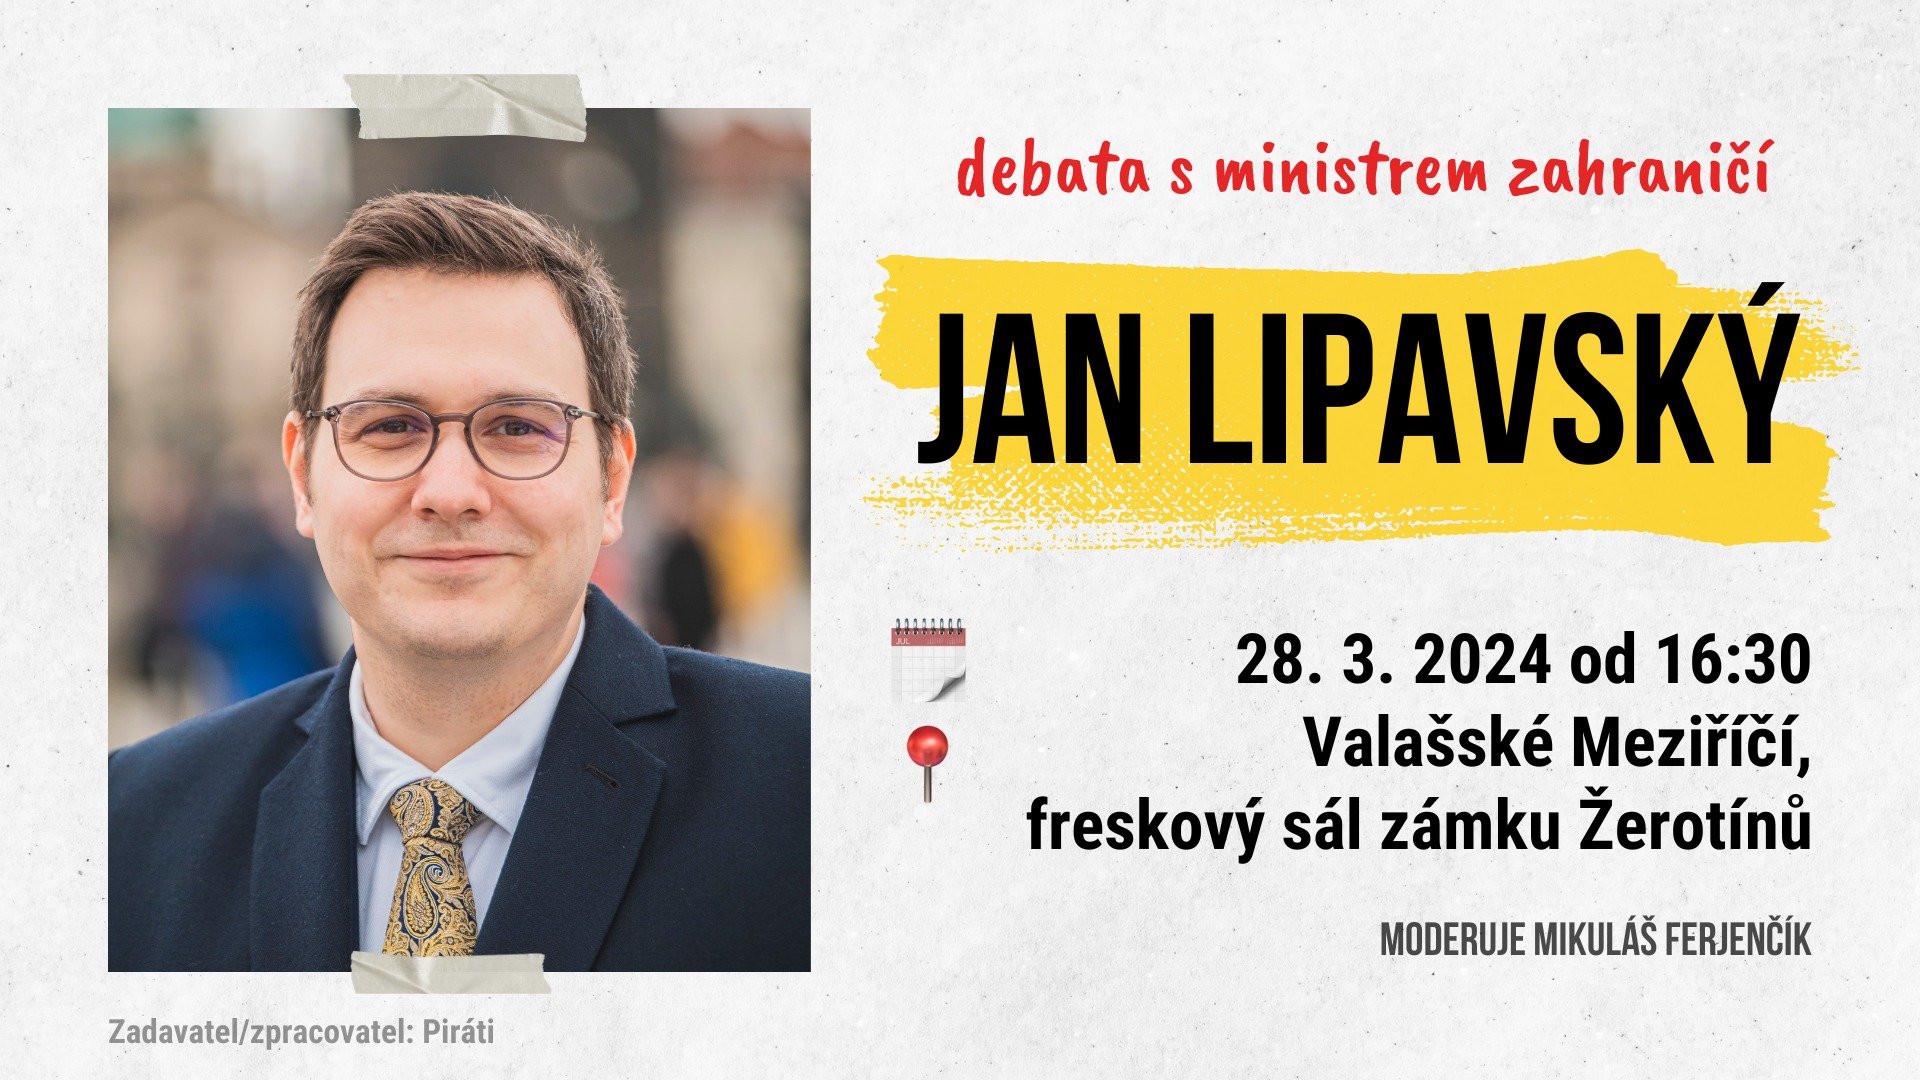 Jan Lipavský ve Valašském Meziříčí - debata s ministrem zahraničí